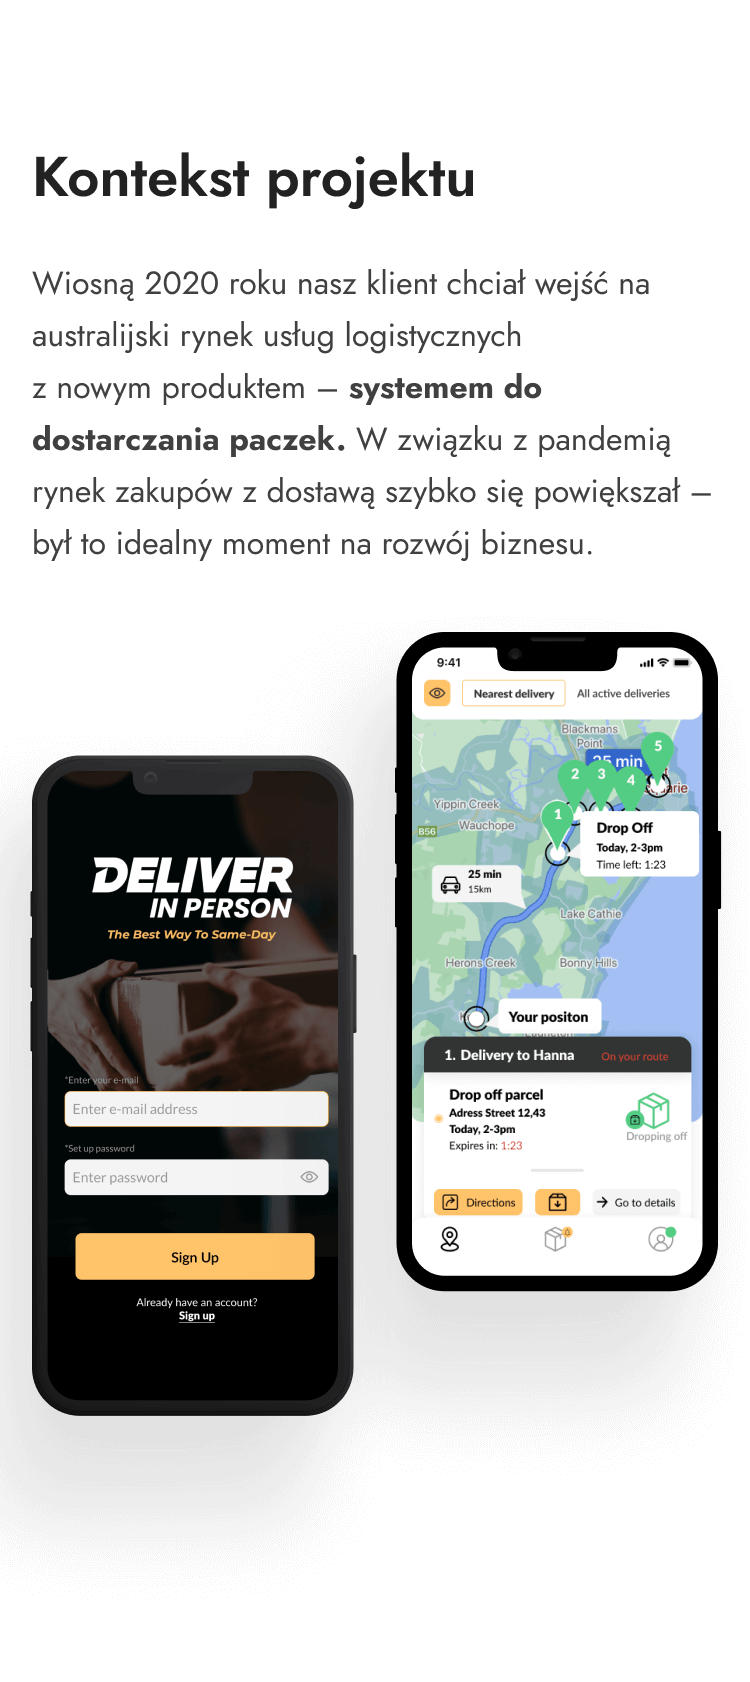 W 2020 roku, nasz klient chciał wejść na rynek usług logistycznych z nowym produktem - systemem do dostarczania paczek. My dzięki naszej aplikacji mobilnej, umożliwiającej śledzenie paczki, pomogliśmy mu osiągnąć sukces.